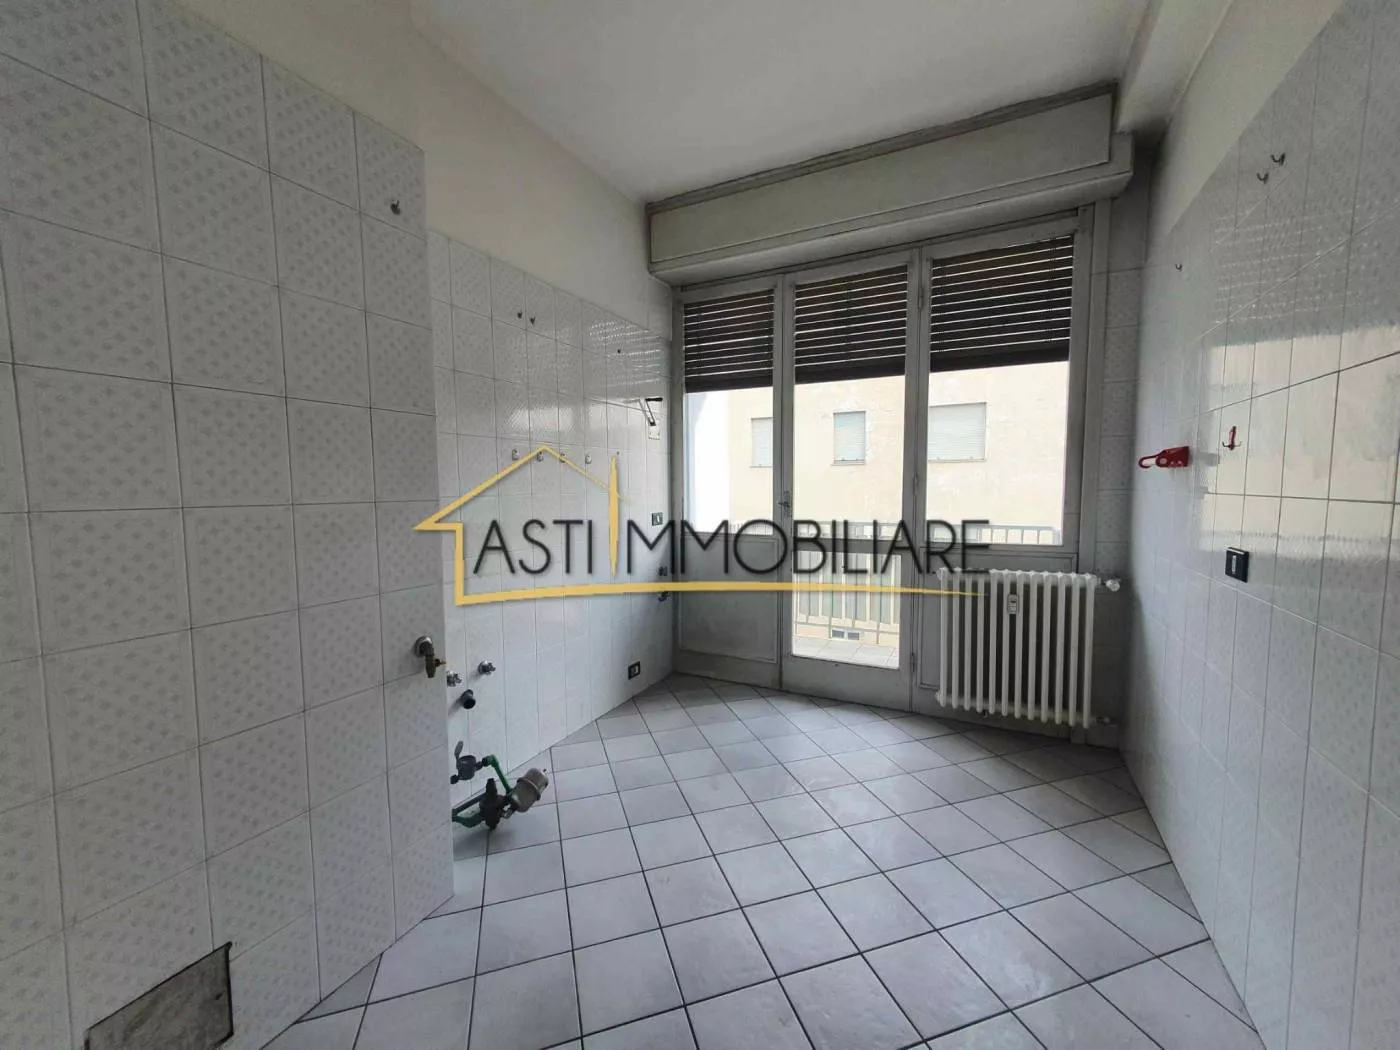 Immagine per Appartamento in Vendita a Asti Via Pietro Micca 15